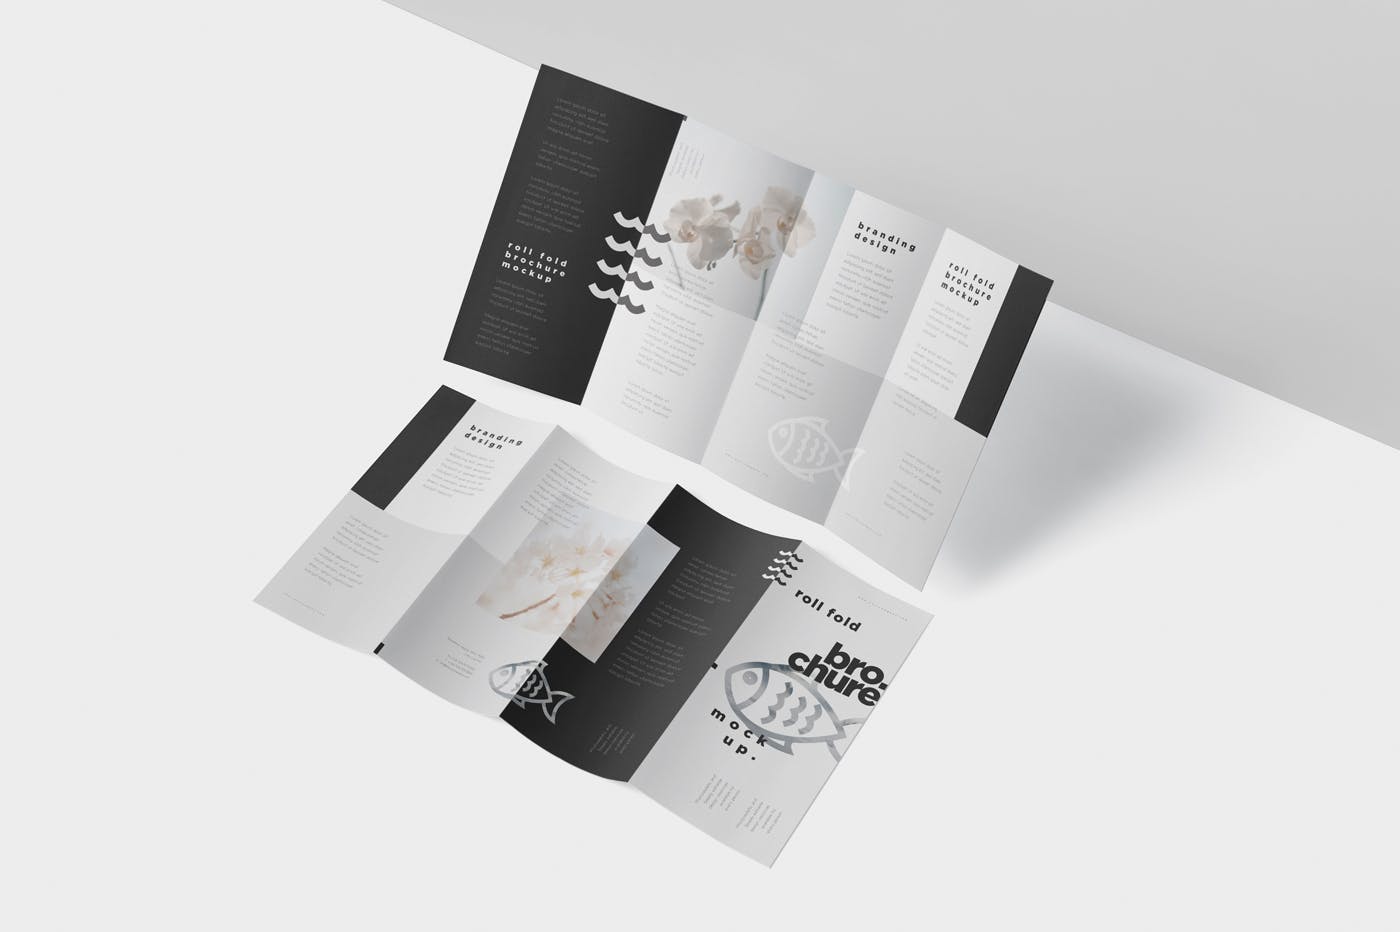 折叠设计风格企业传单/宣传册设计样机非凡图库精选 Roll-Fold Brochure Mockup – DL DIN Lang Size插图(3)